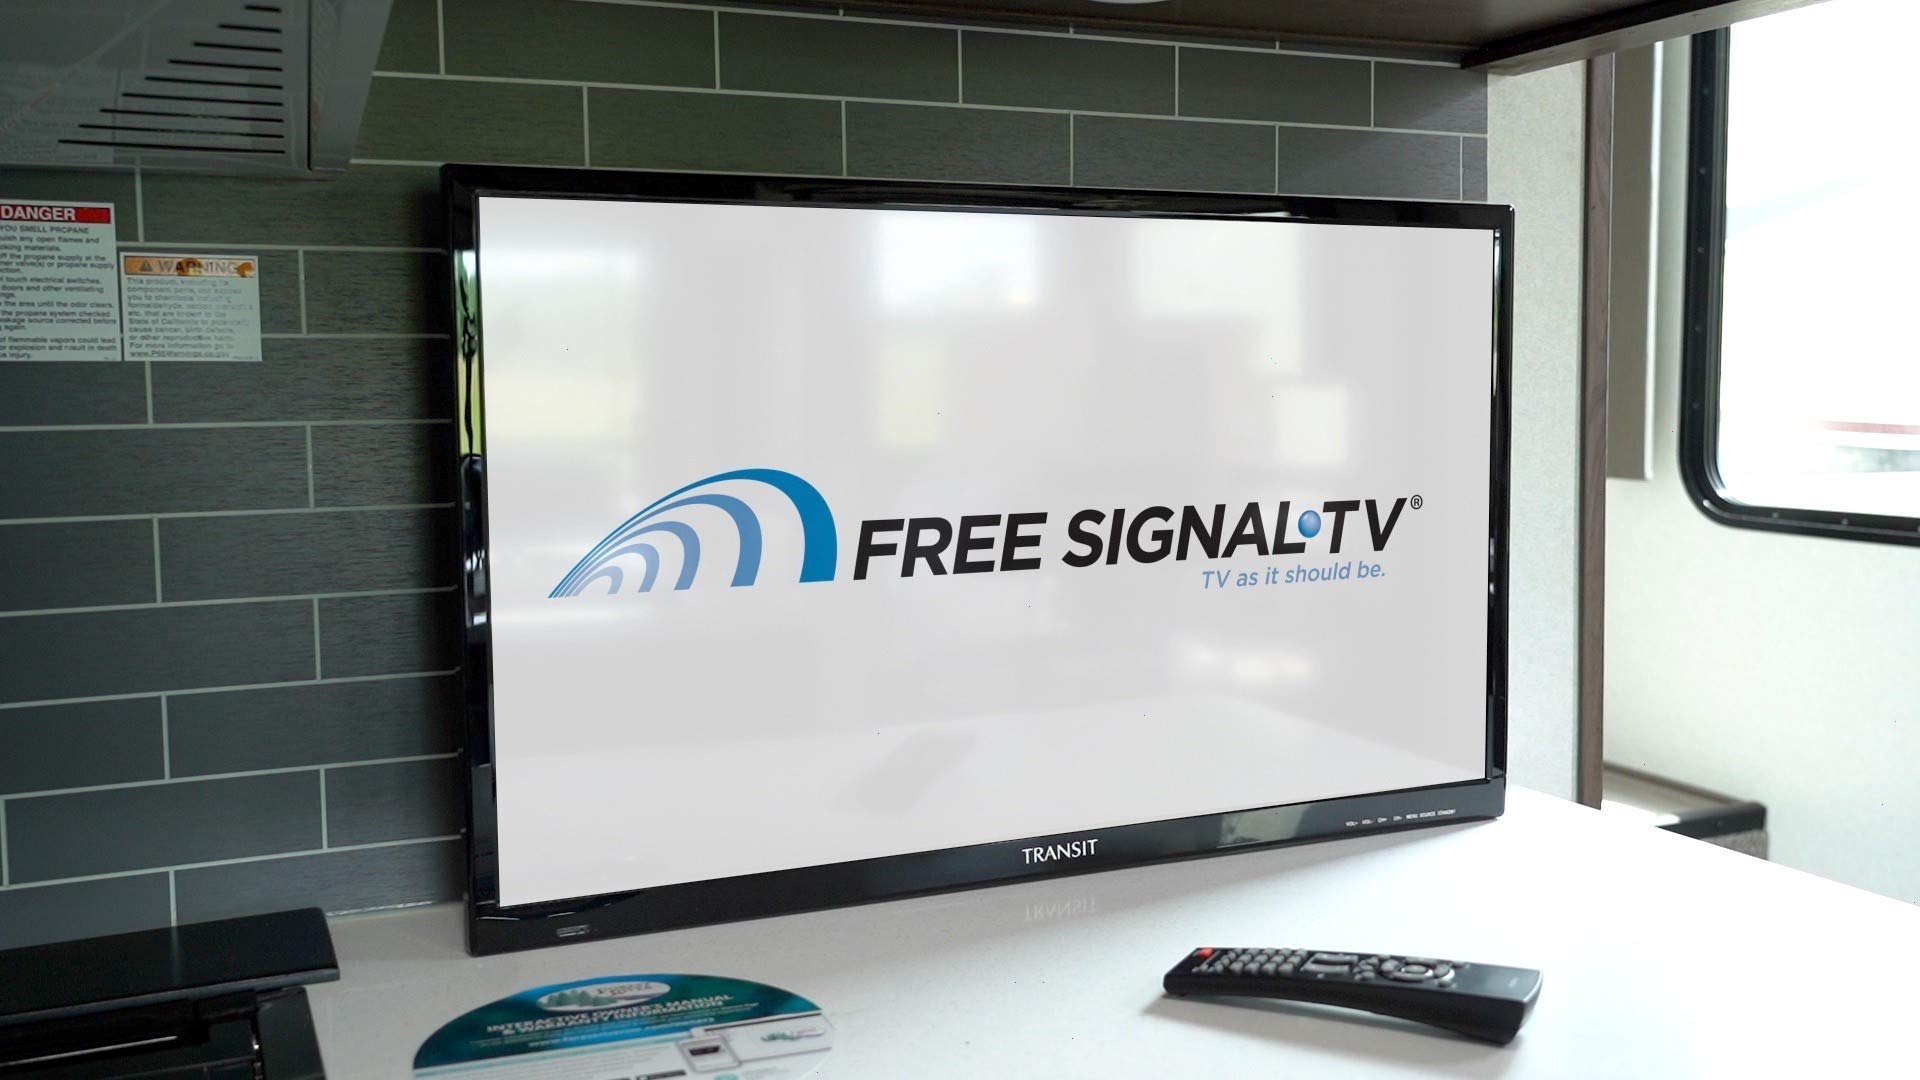 FREE SIGNAL TV Transit 28